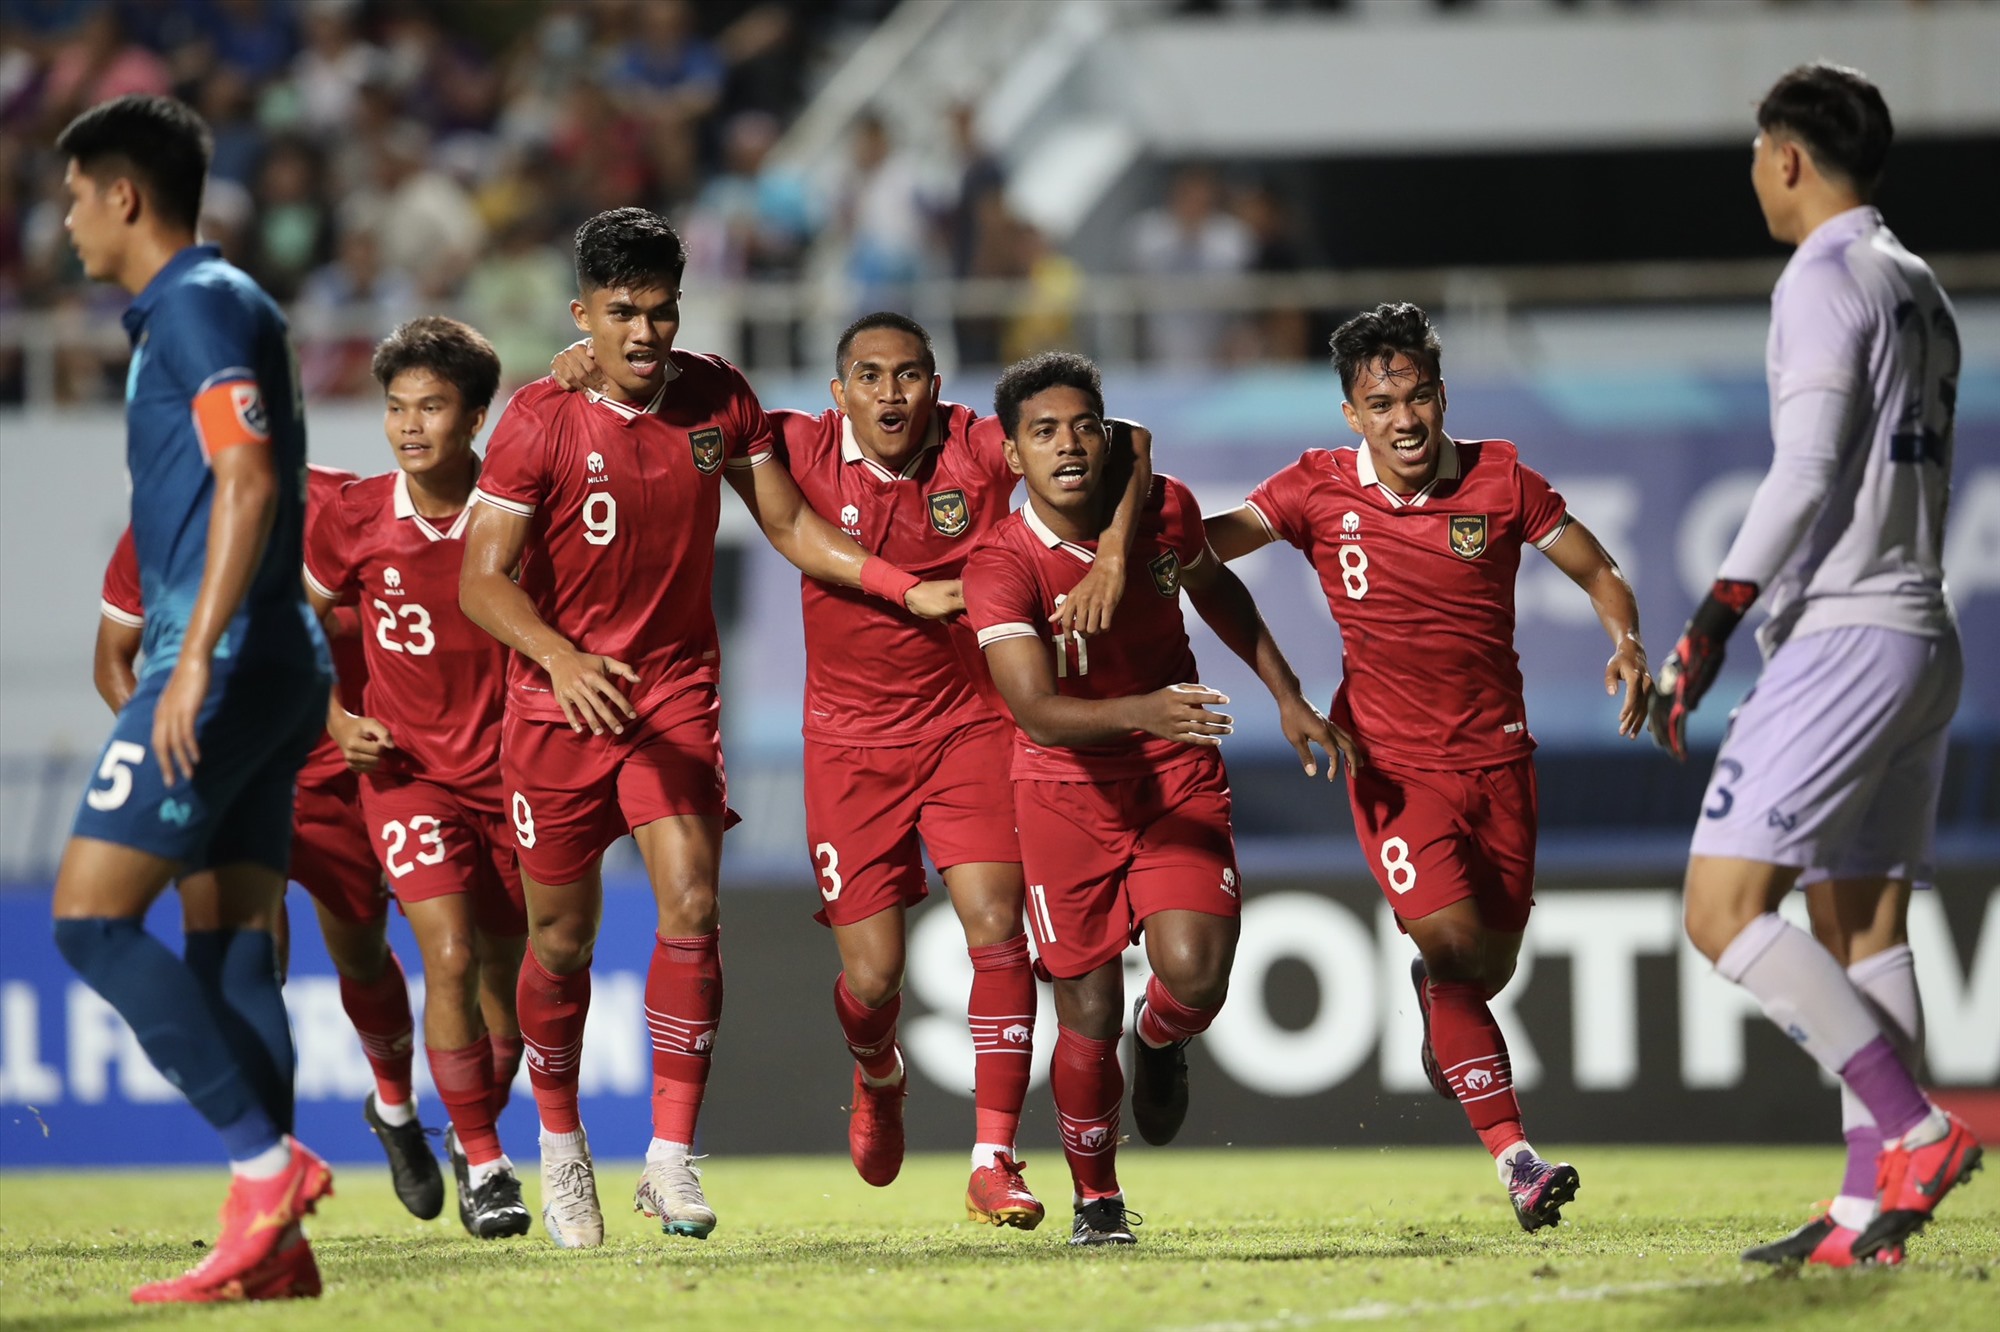 U23 Indonesia giành chiến thắng 3-1 trước U23 Thái Lan. Ảnh: Lâm Thoả